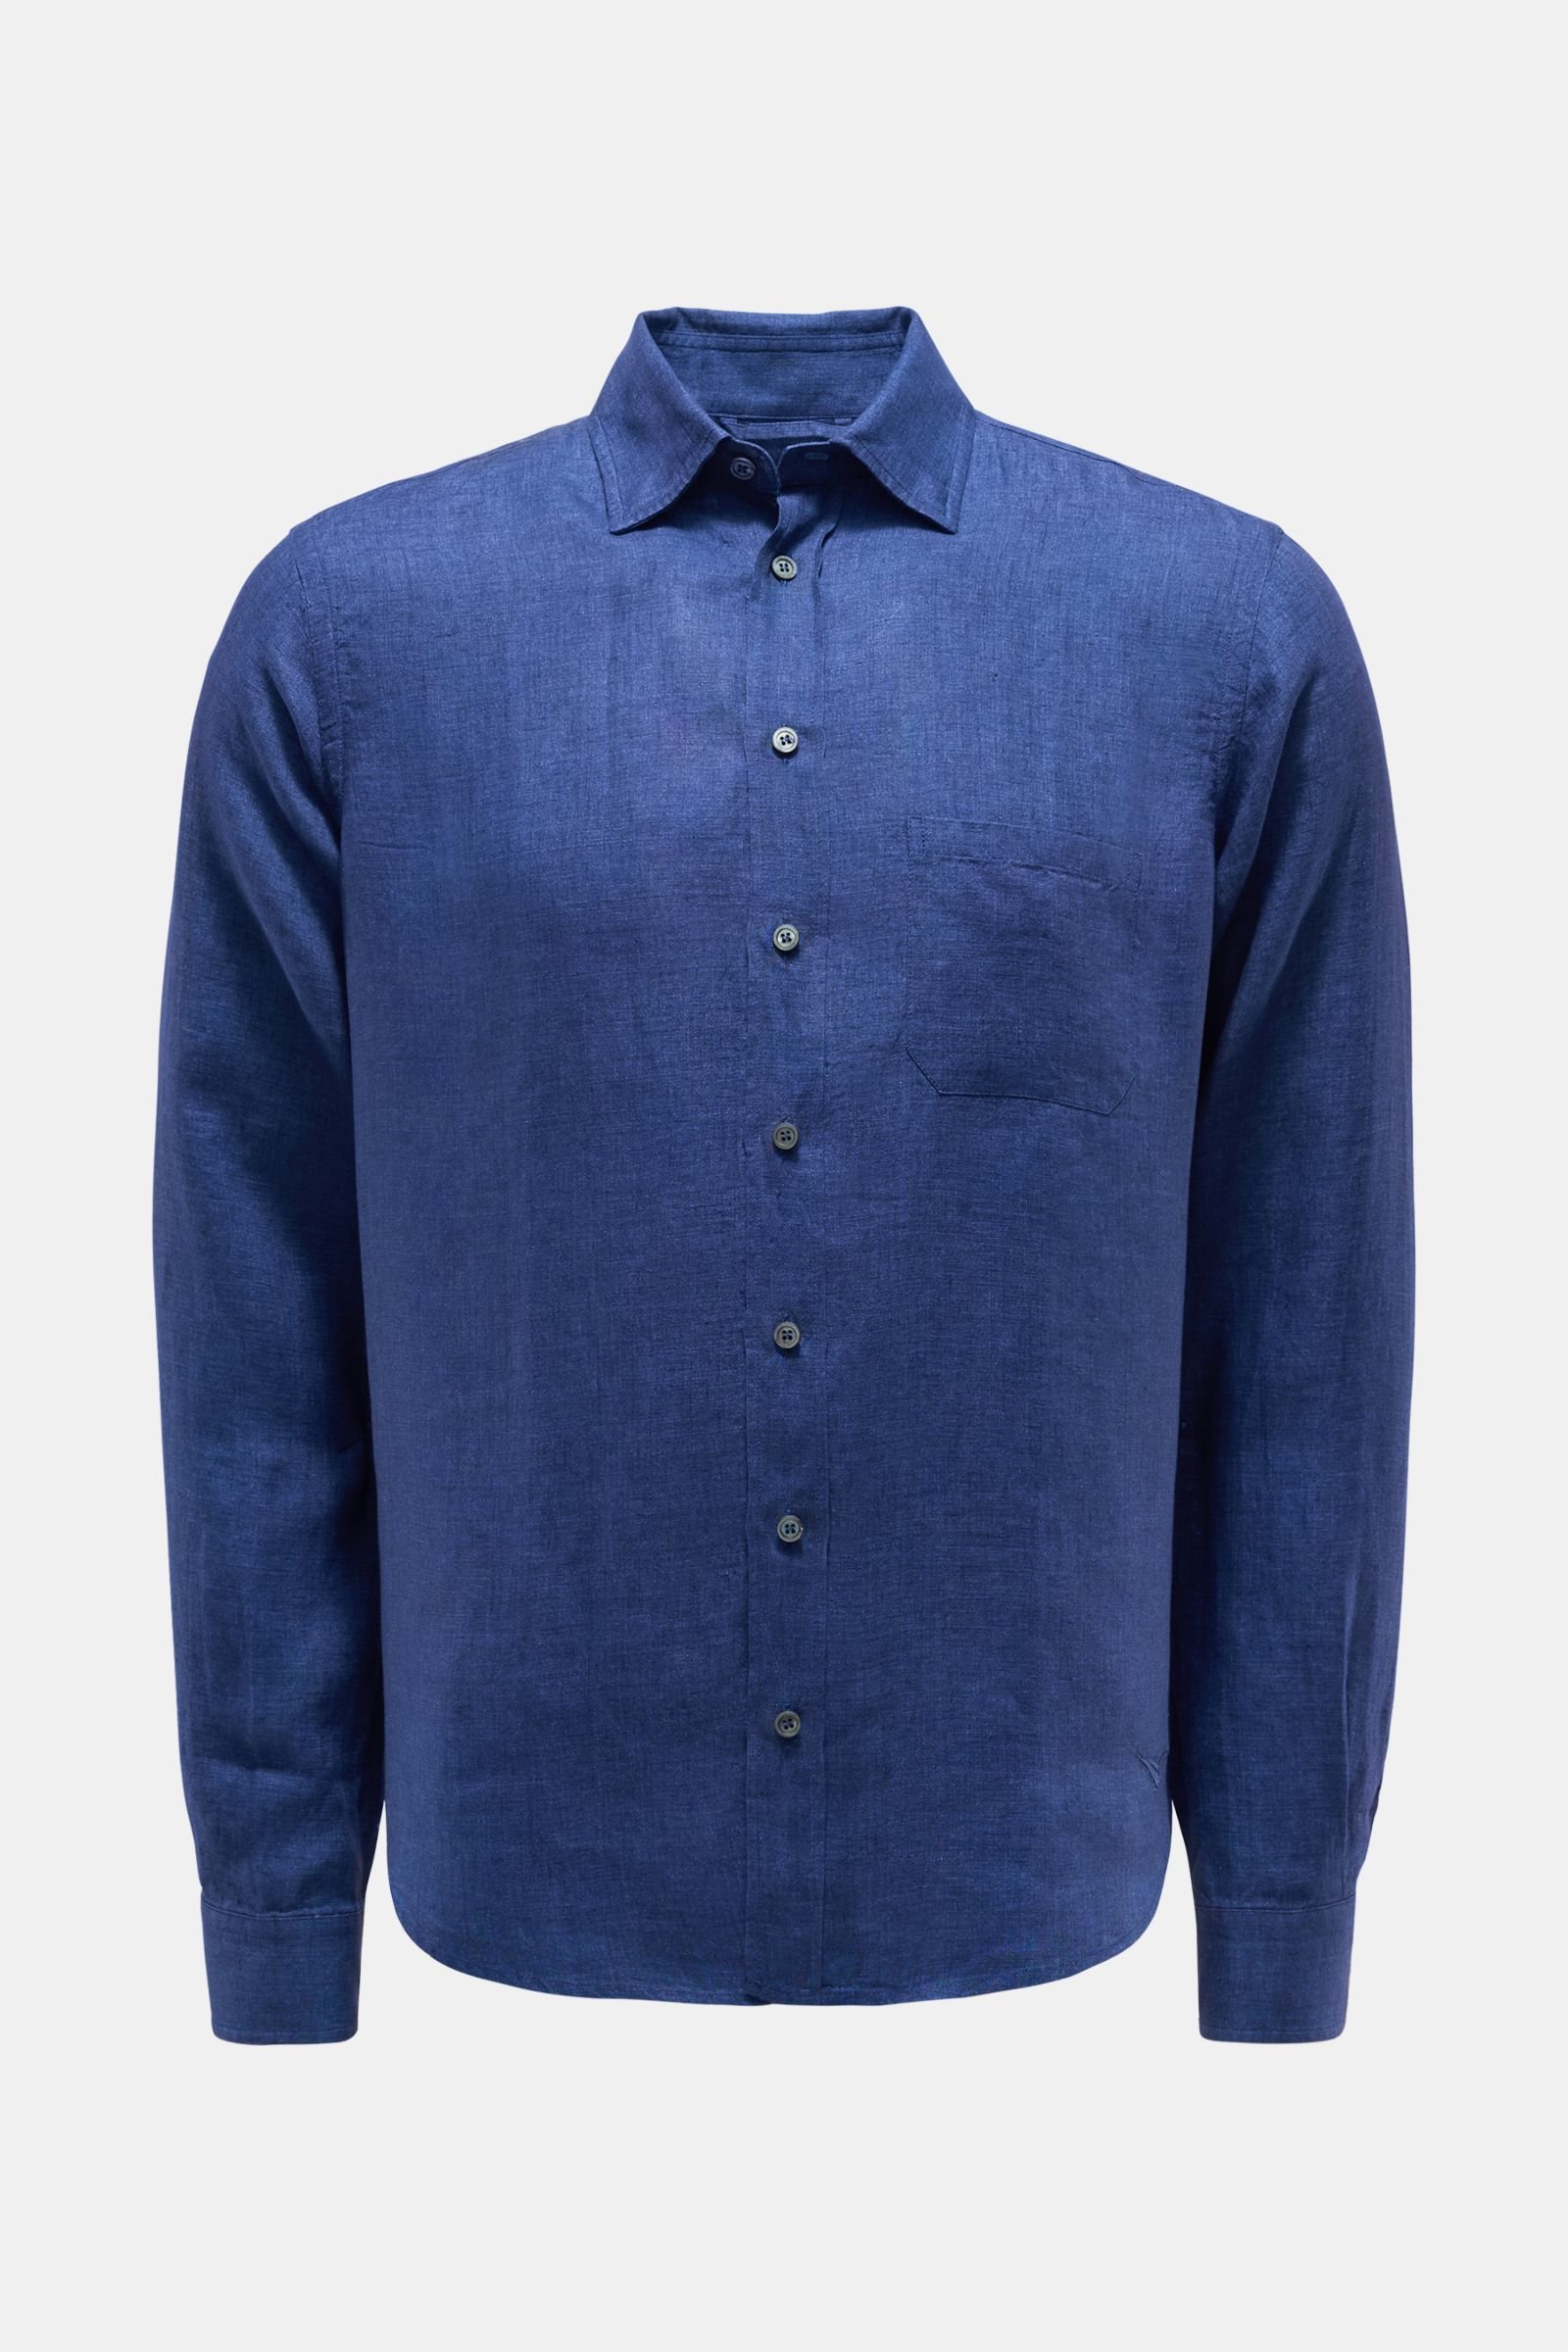 Linen shirt Kent collar dark blue